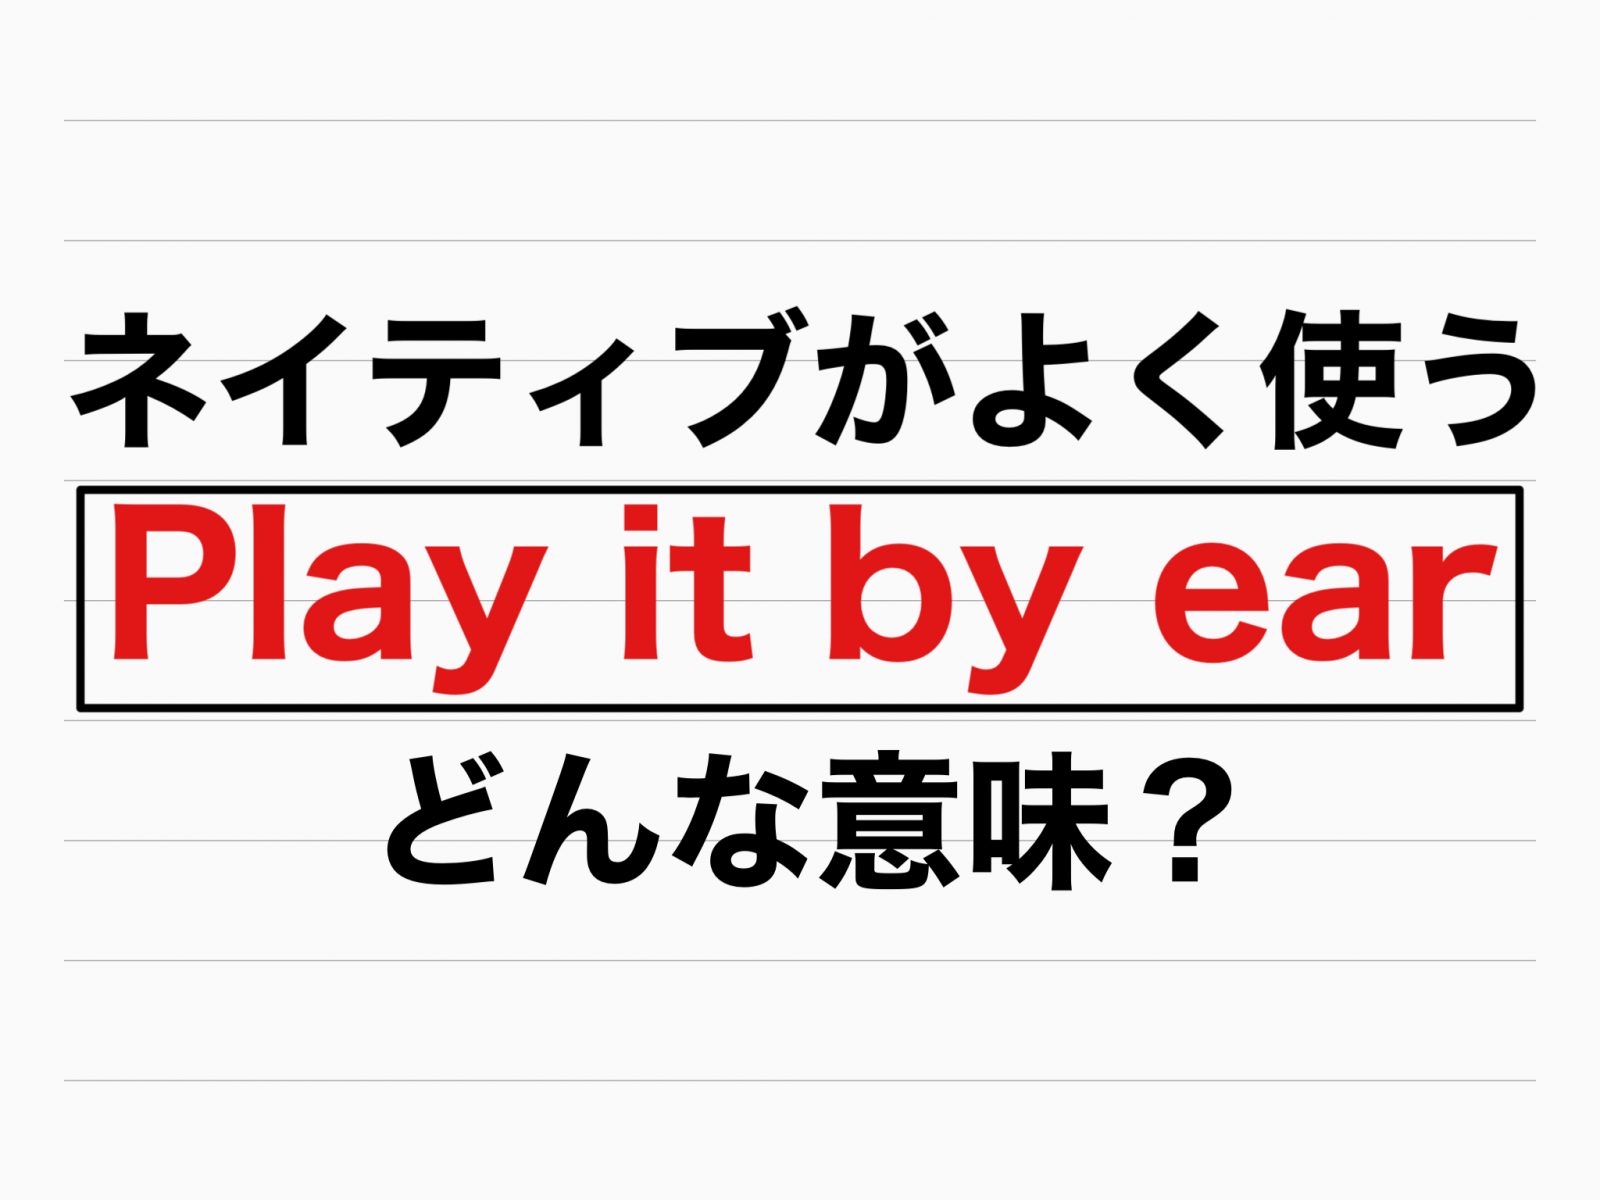 ネイティブがよく使う英語「Play it by ear」意味は？ - 記事詳細｜Infoseekニュース